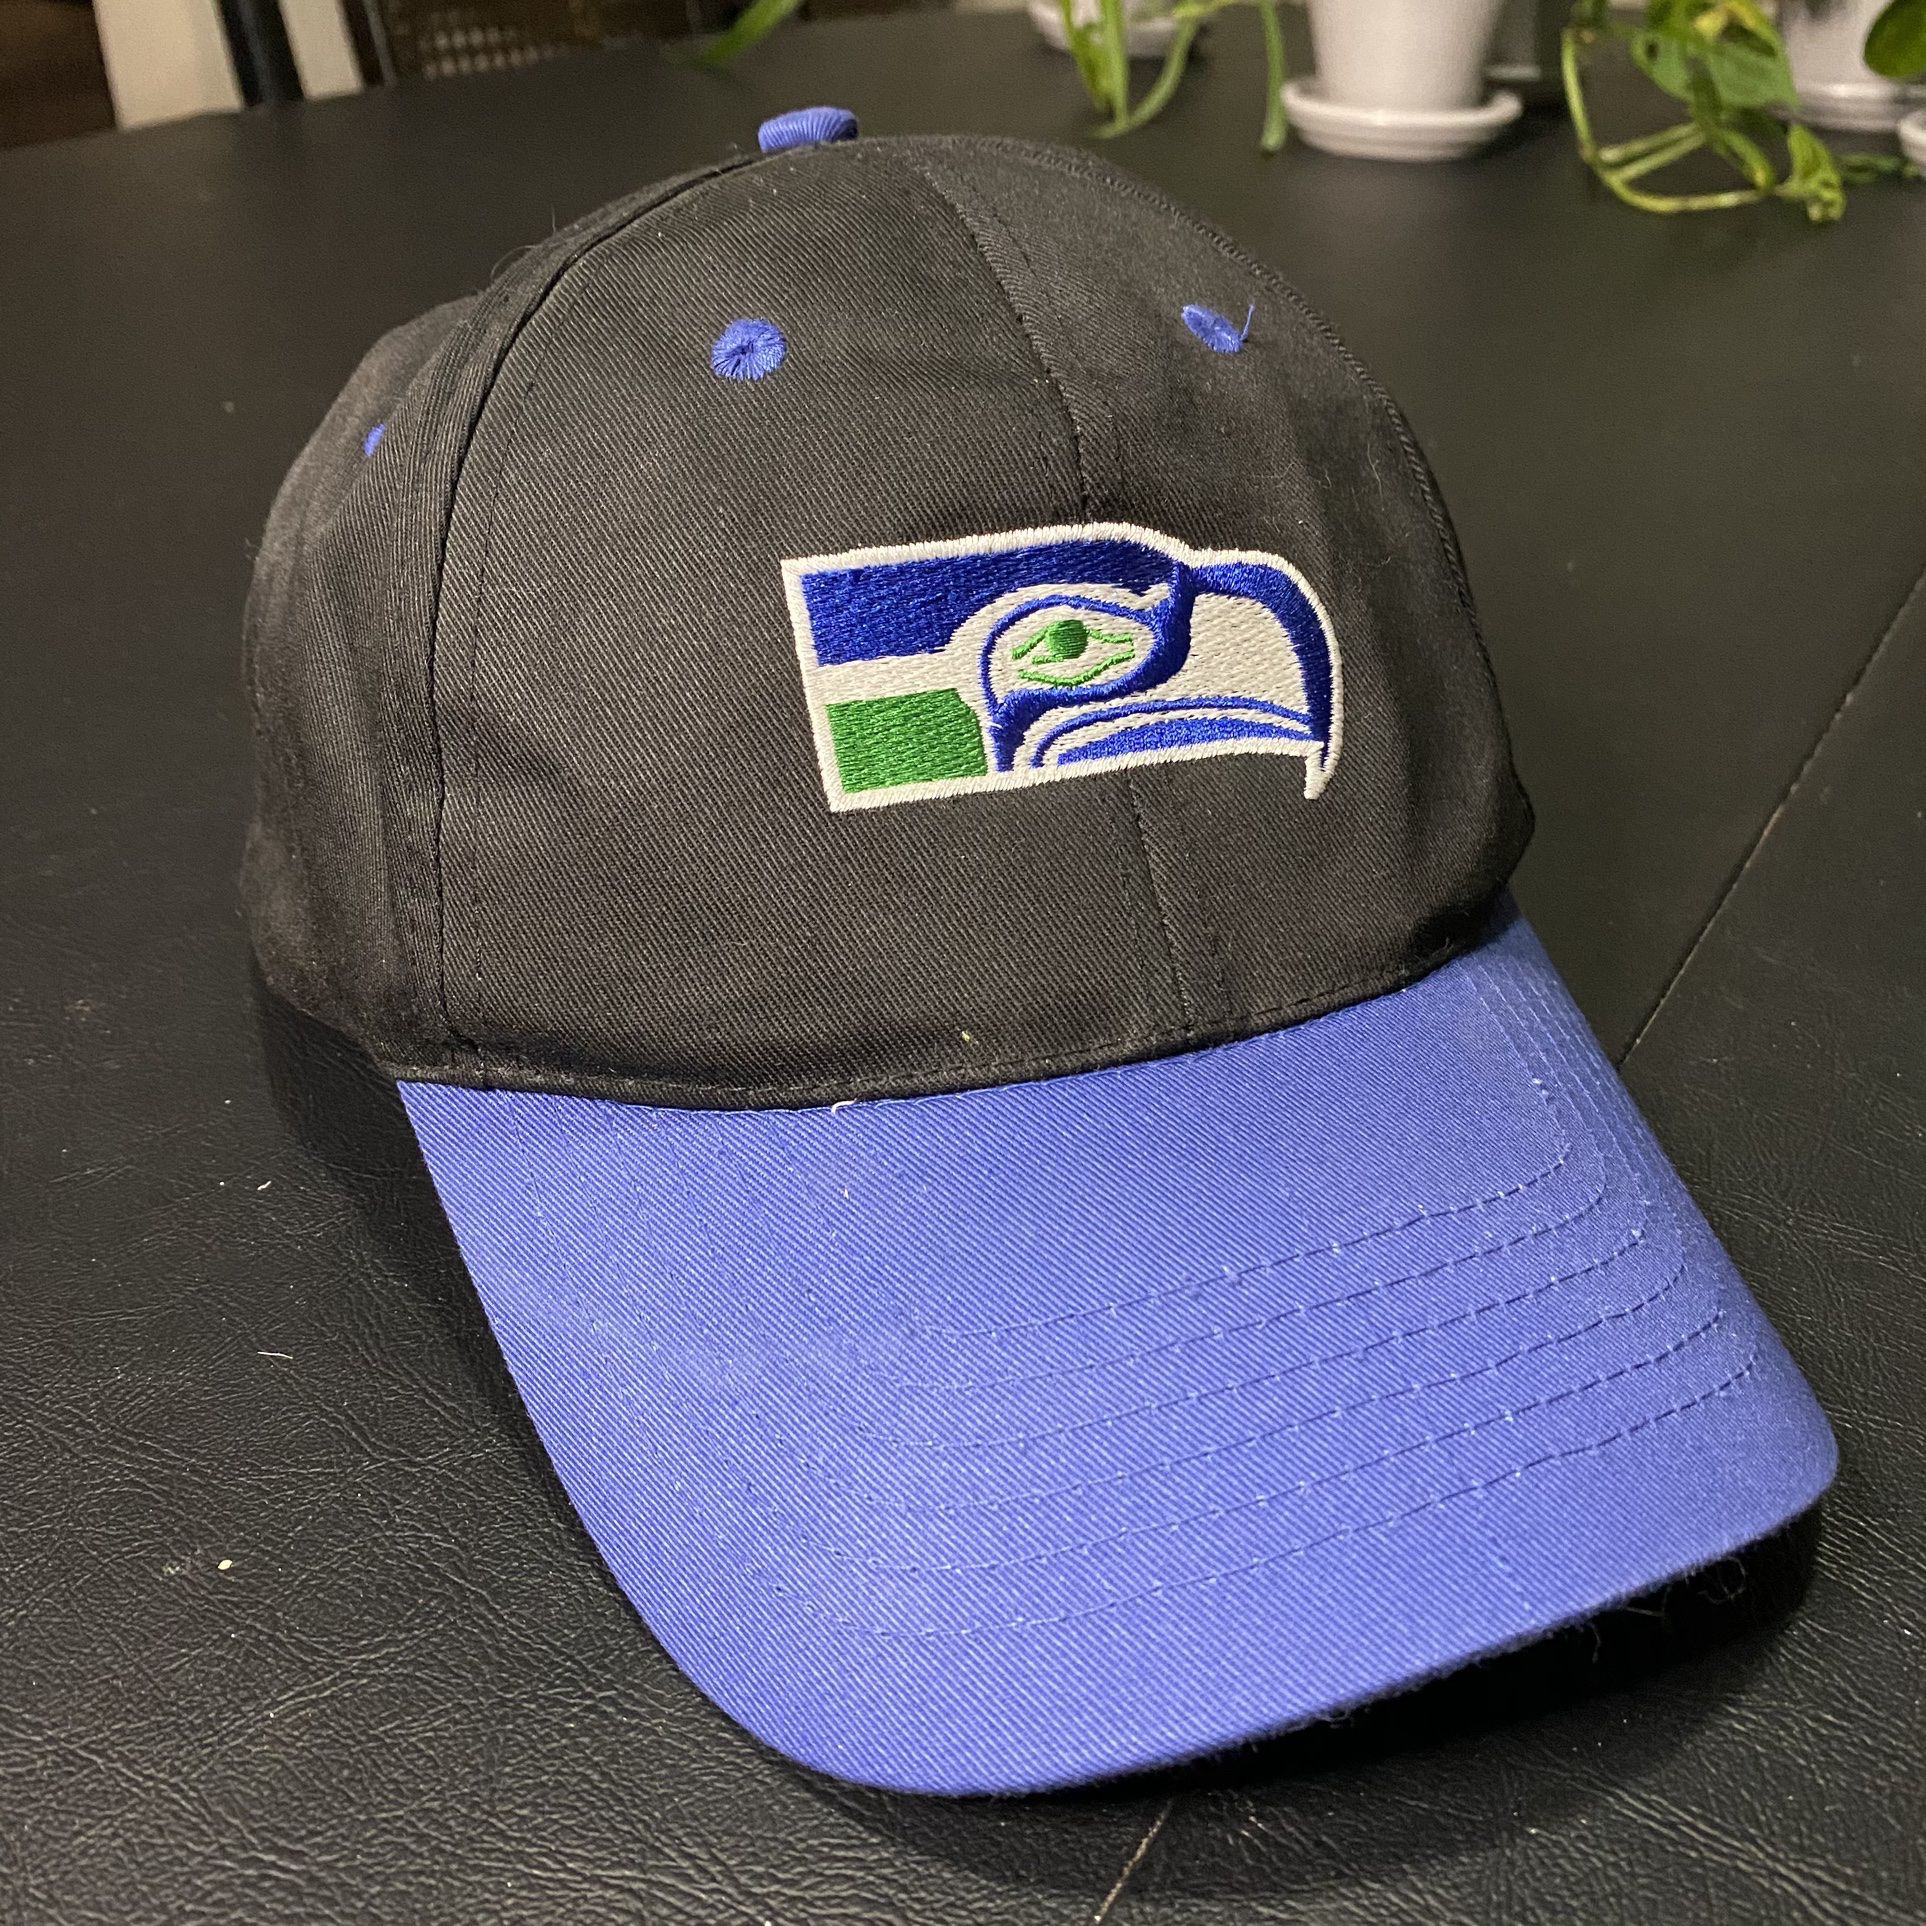 Vintage 1990s NFL Football Seattle Seahawks SnapBack Hat